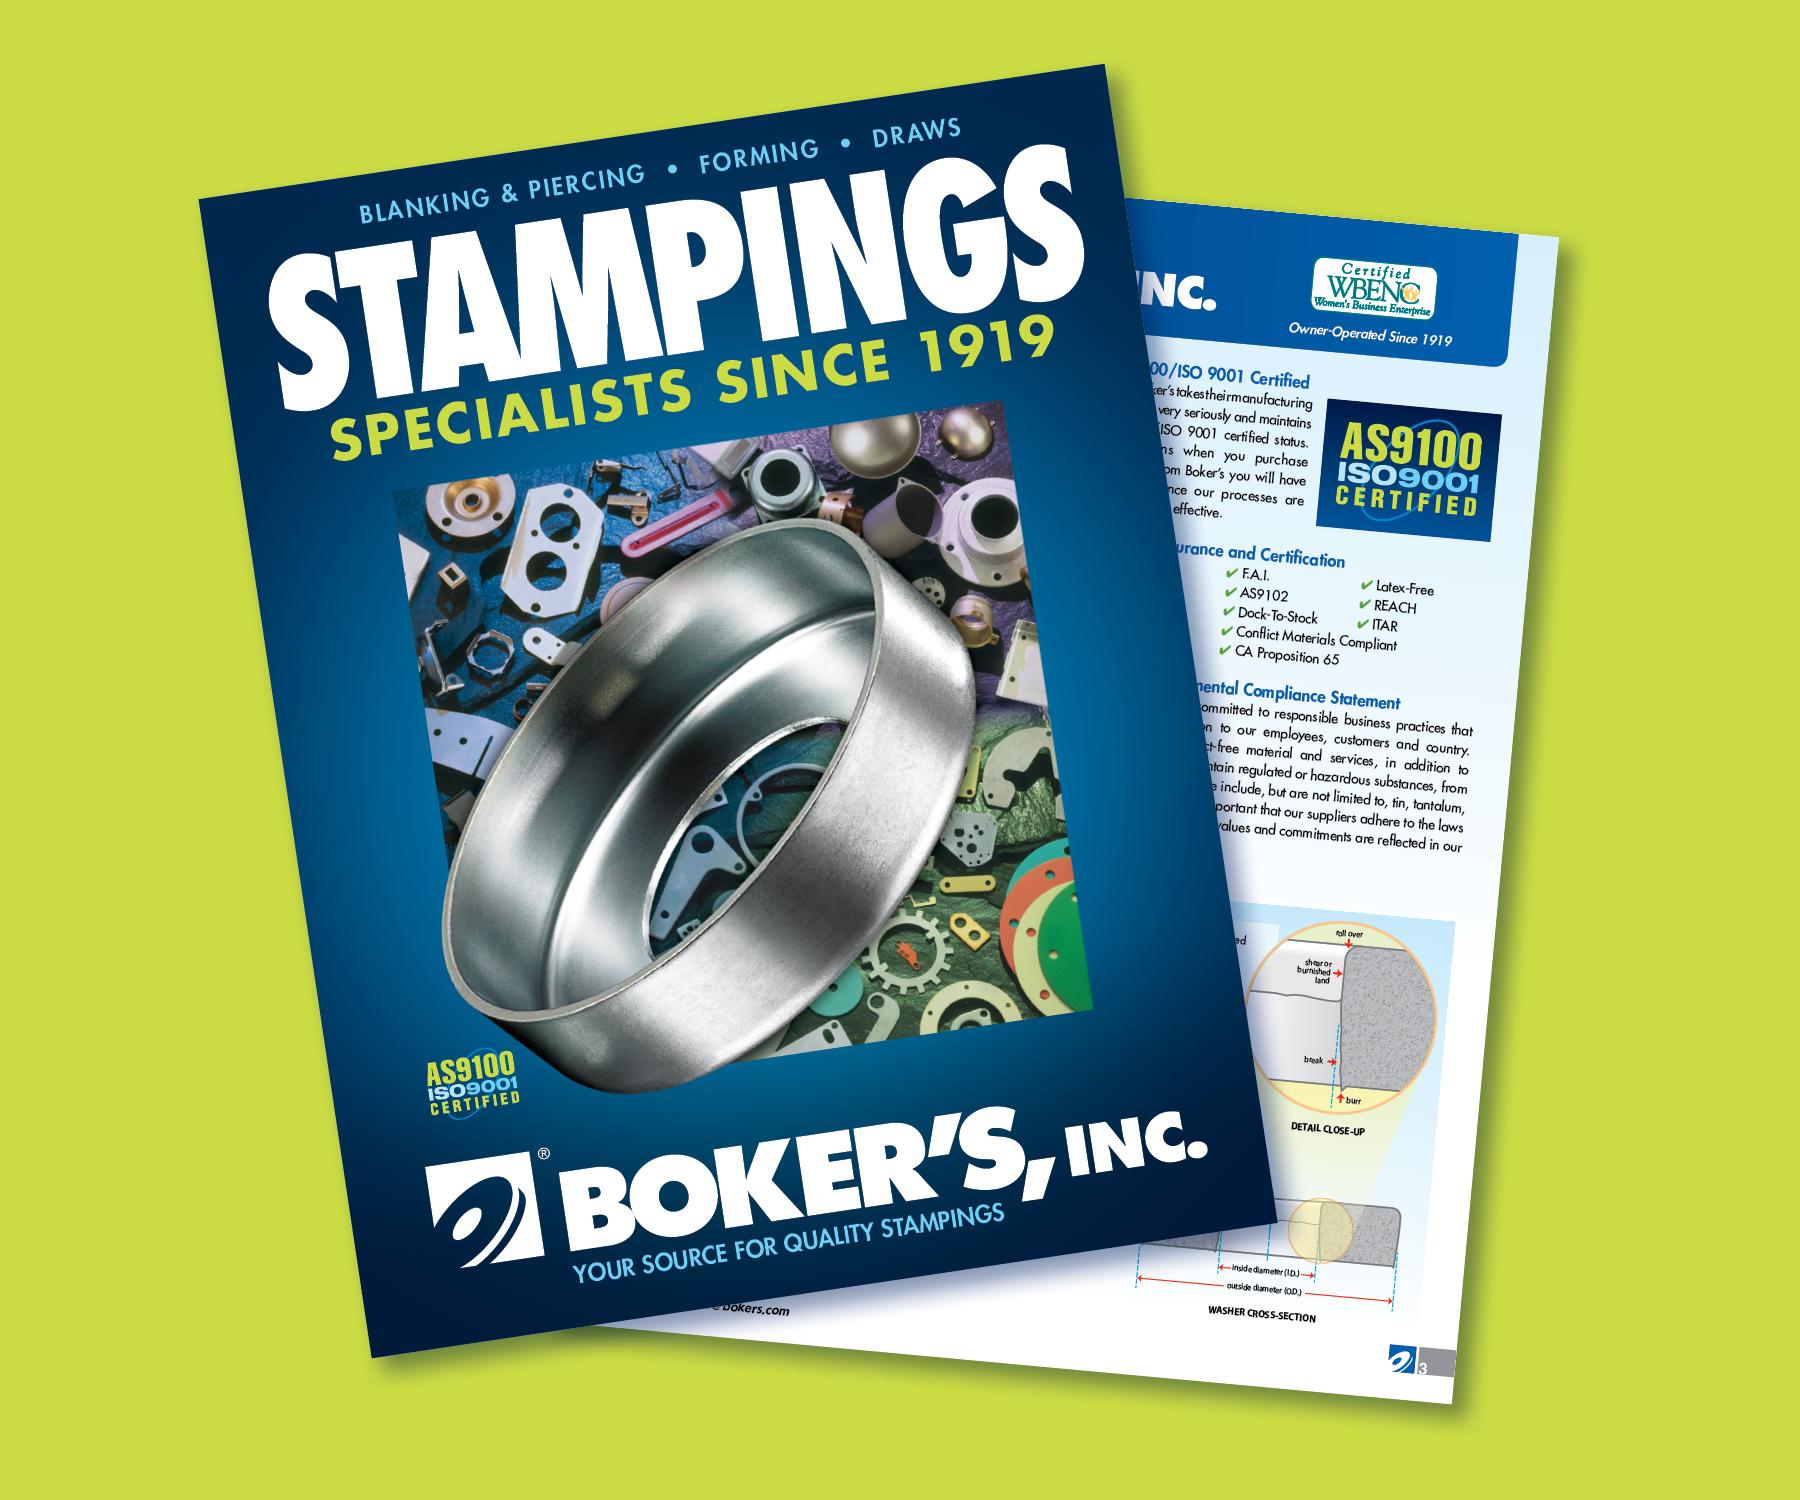 bokers-2018-stampings-brochure.jpg